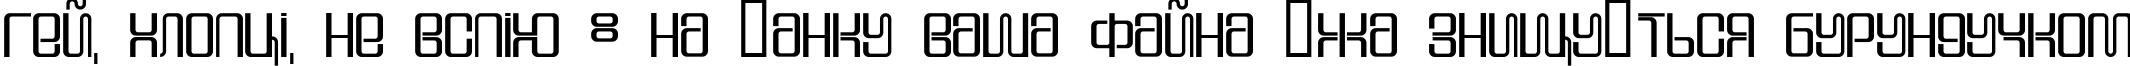 Пример написания шрифтом DS Supervixen Cyr текста на украинском